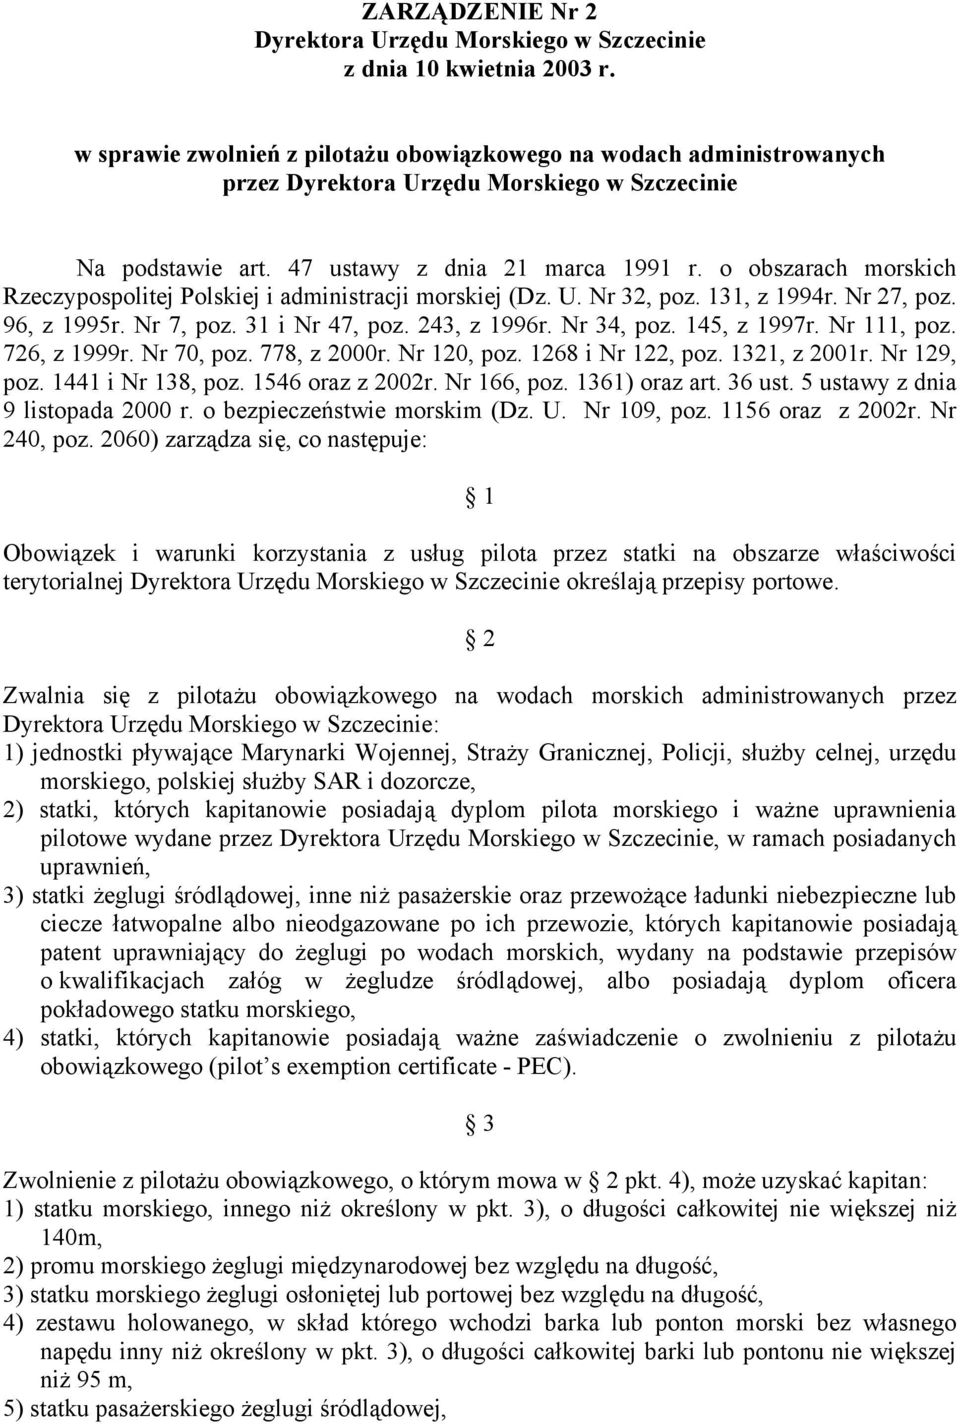 o obszarach morskich Rzeczypospolitej Polskiej i administracji morskiej (Dz. U. Nr 32, poz. 131, z 1994r. Nr 27, poz. 96, z 1995r. Nr 7, poz. 31 i Nr 47, poz. 243, z 1996r. Nr 34, poz. 145, z 1997r.